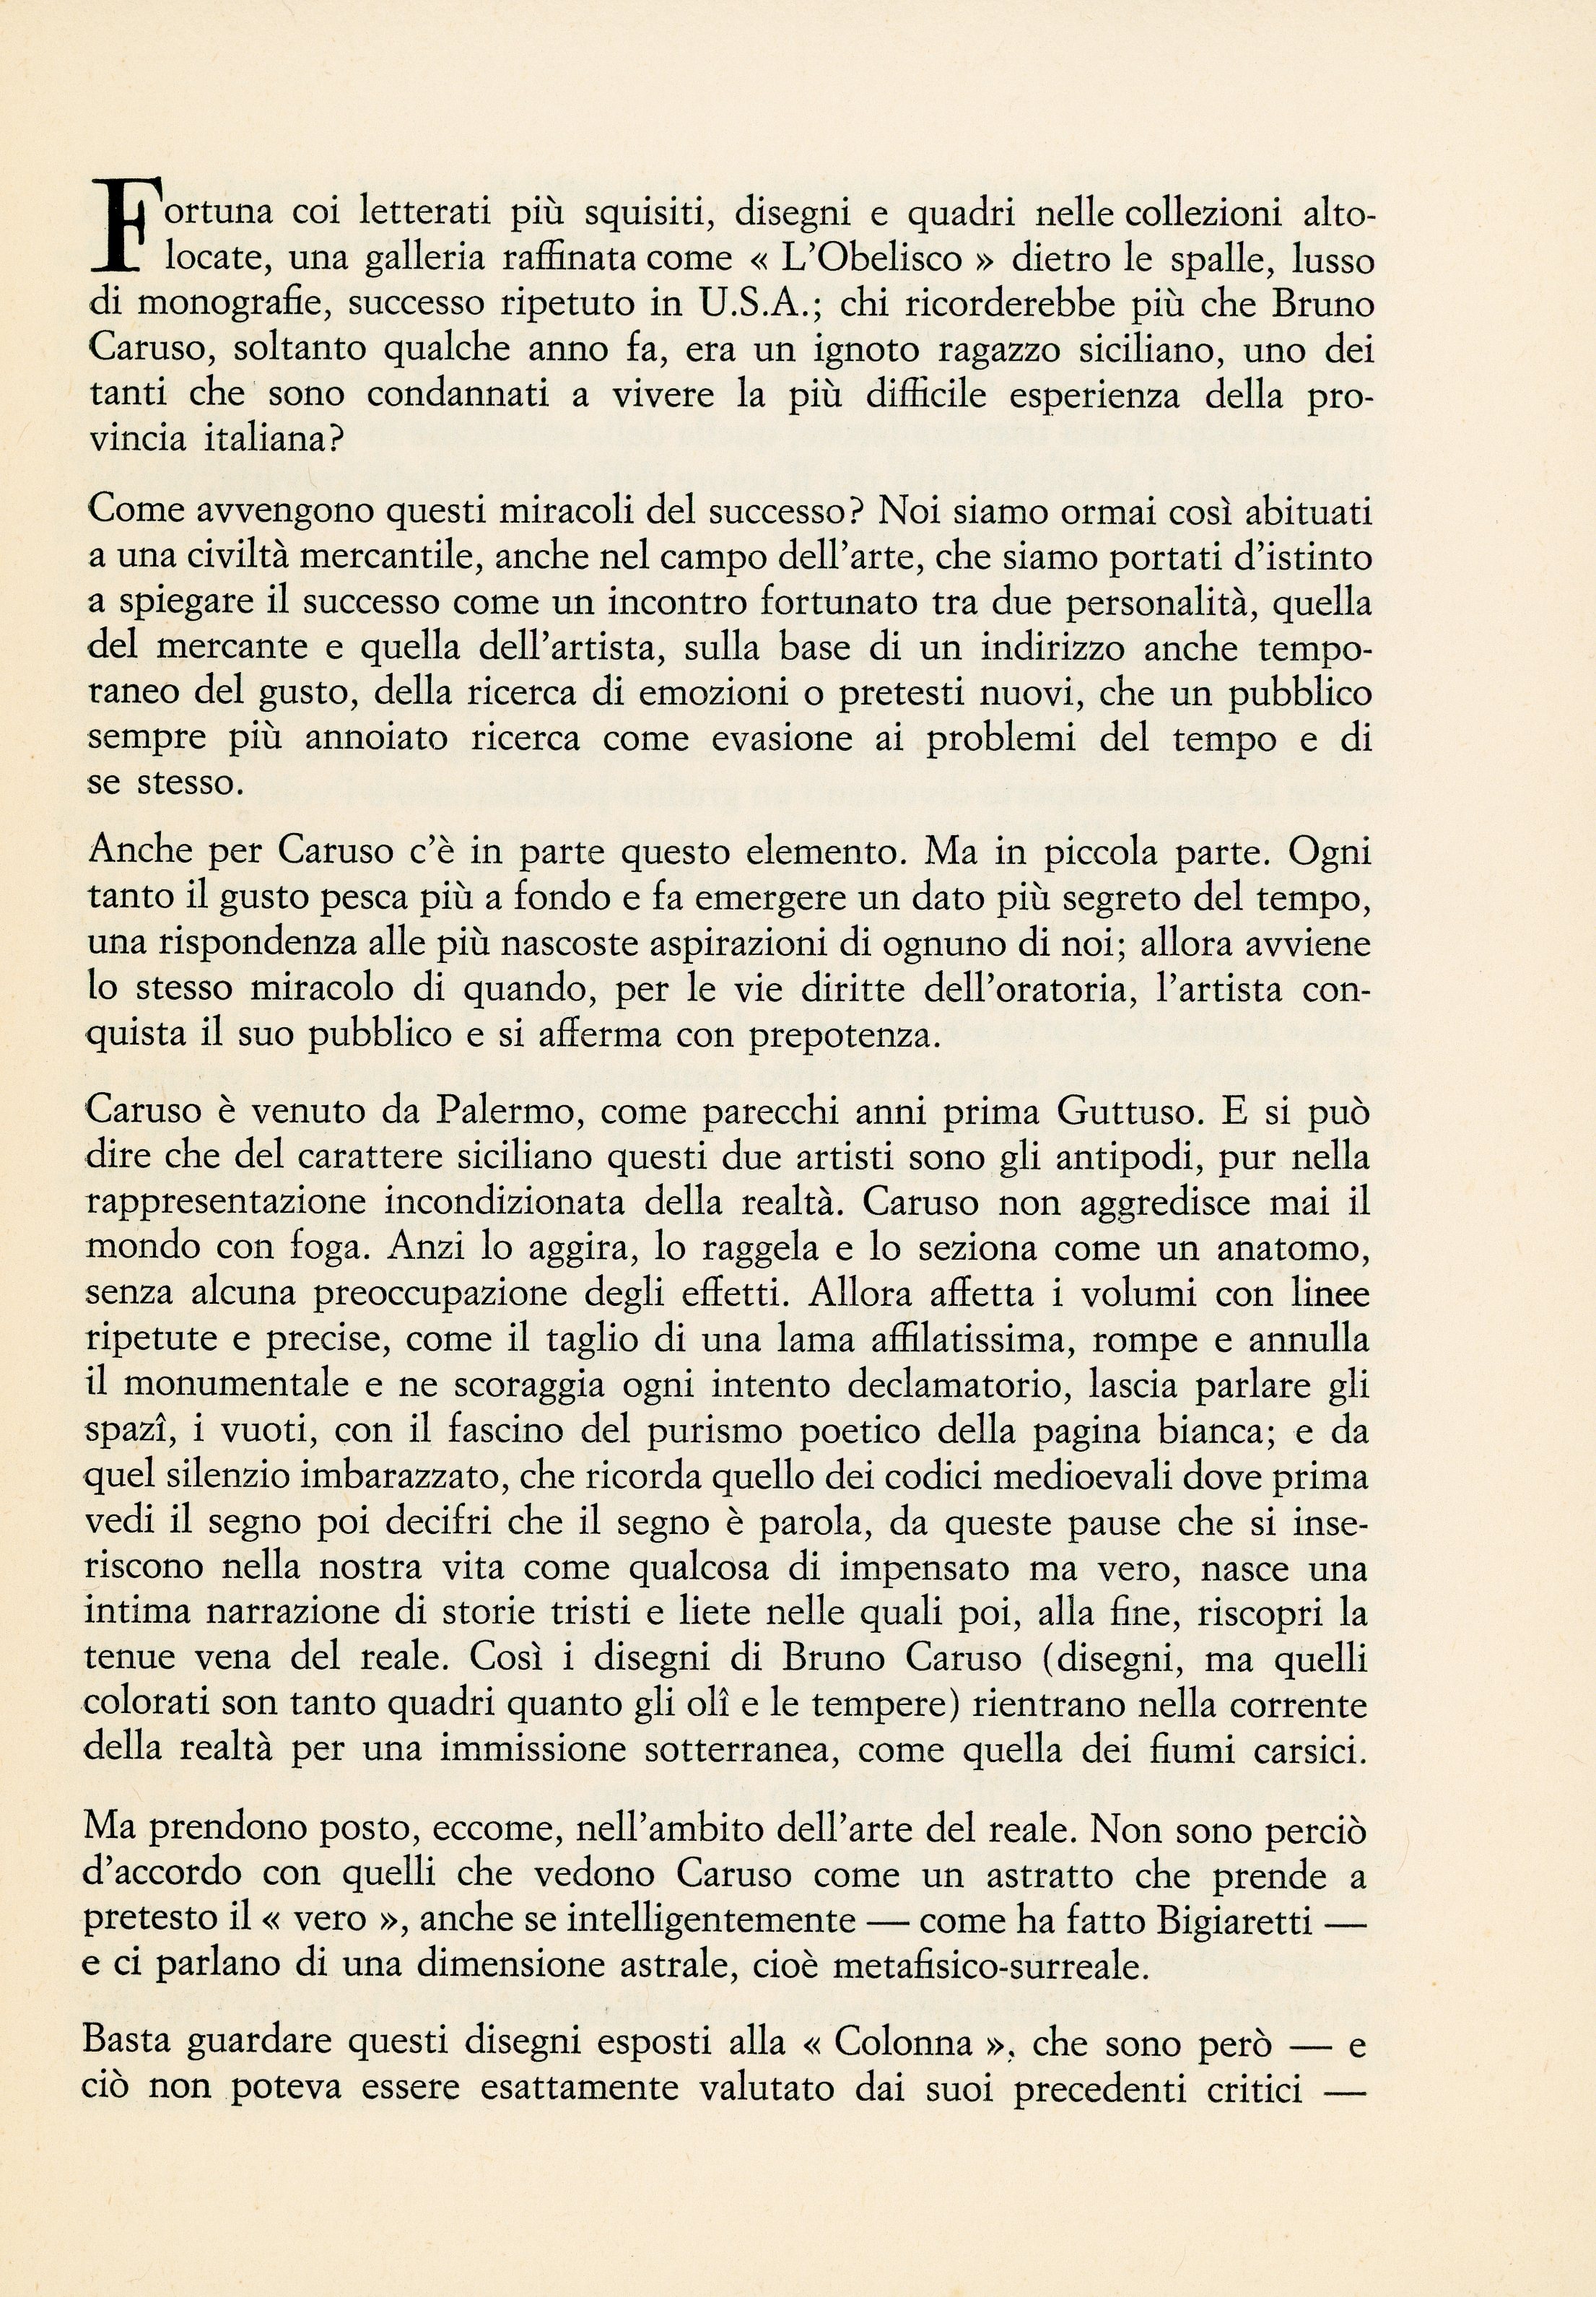 1961-10 Galleria La Colonna - Bruno Caruso_03.jpg